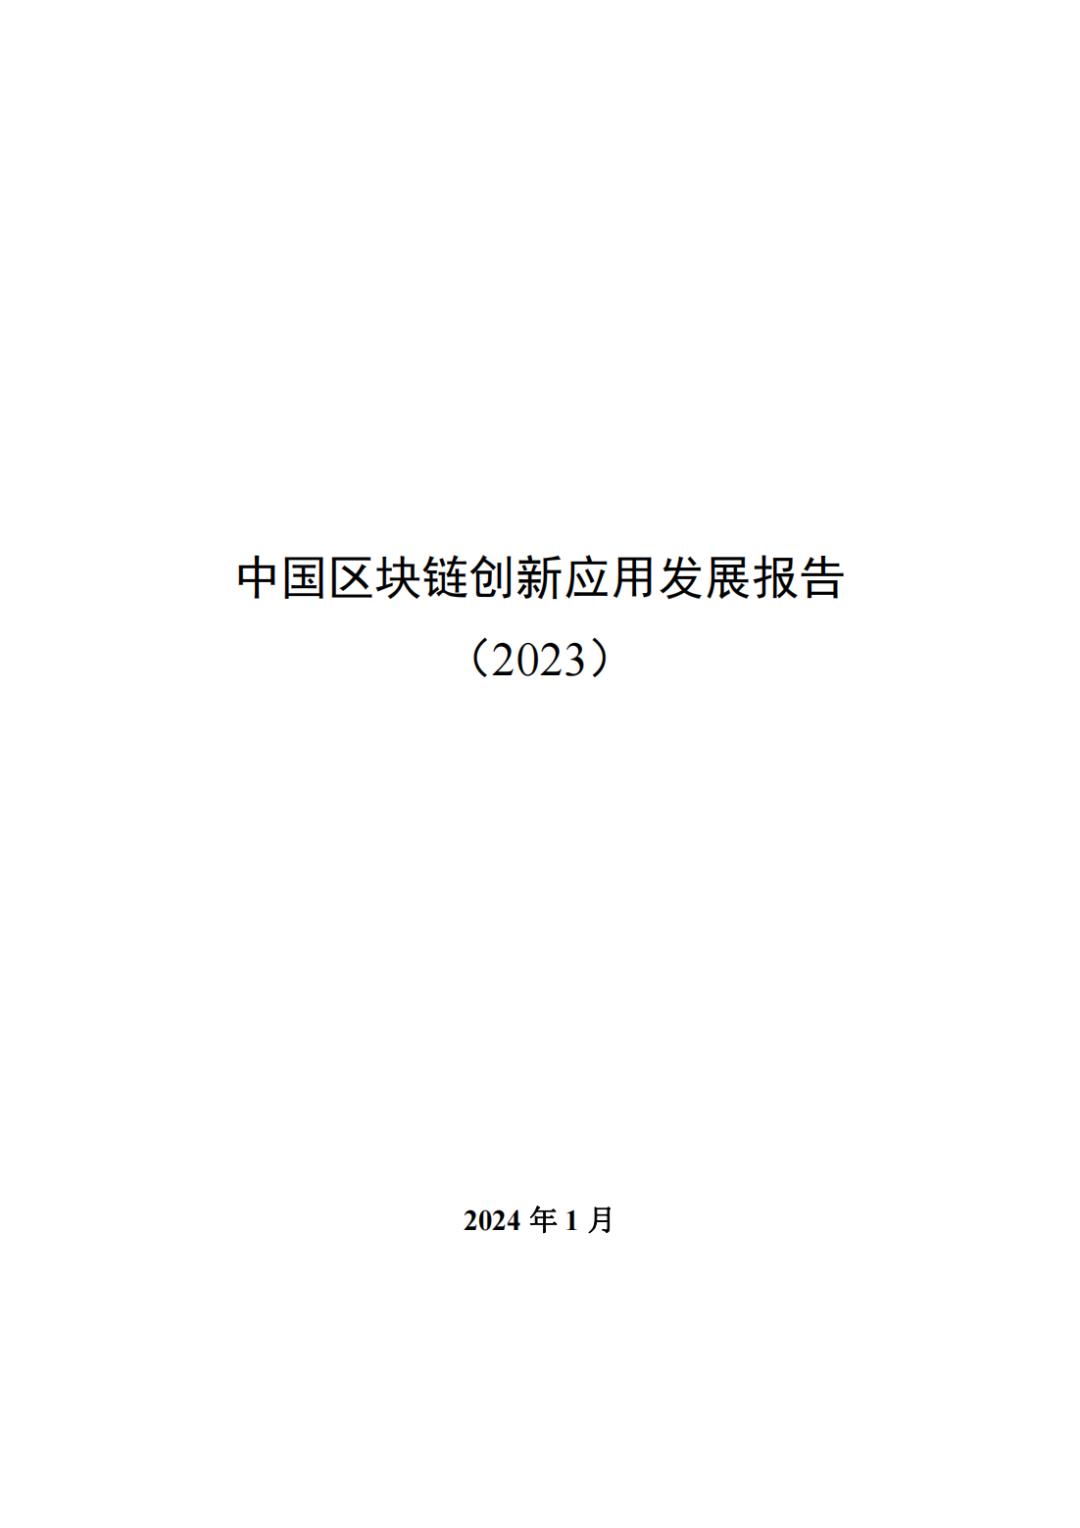 资料领取 | 中央网信办发布中国区块链创新应用发展报告和案例集(2023)